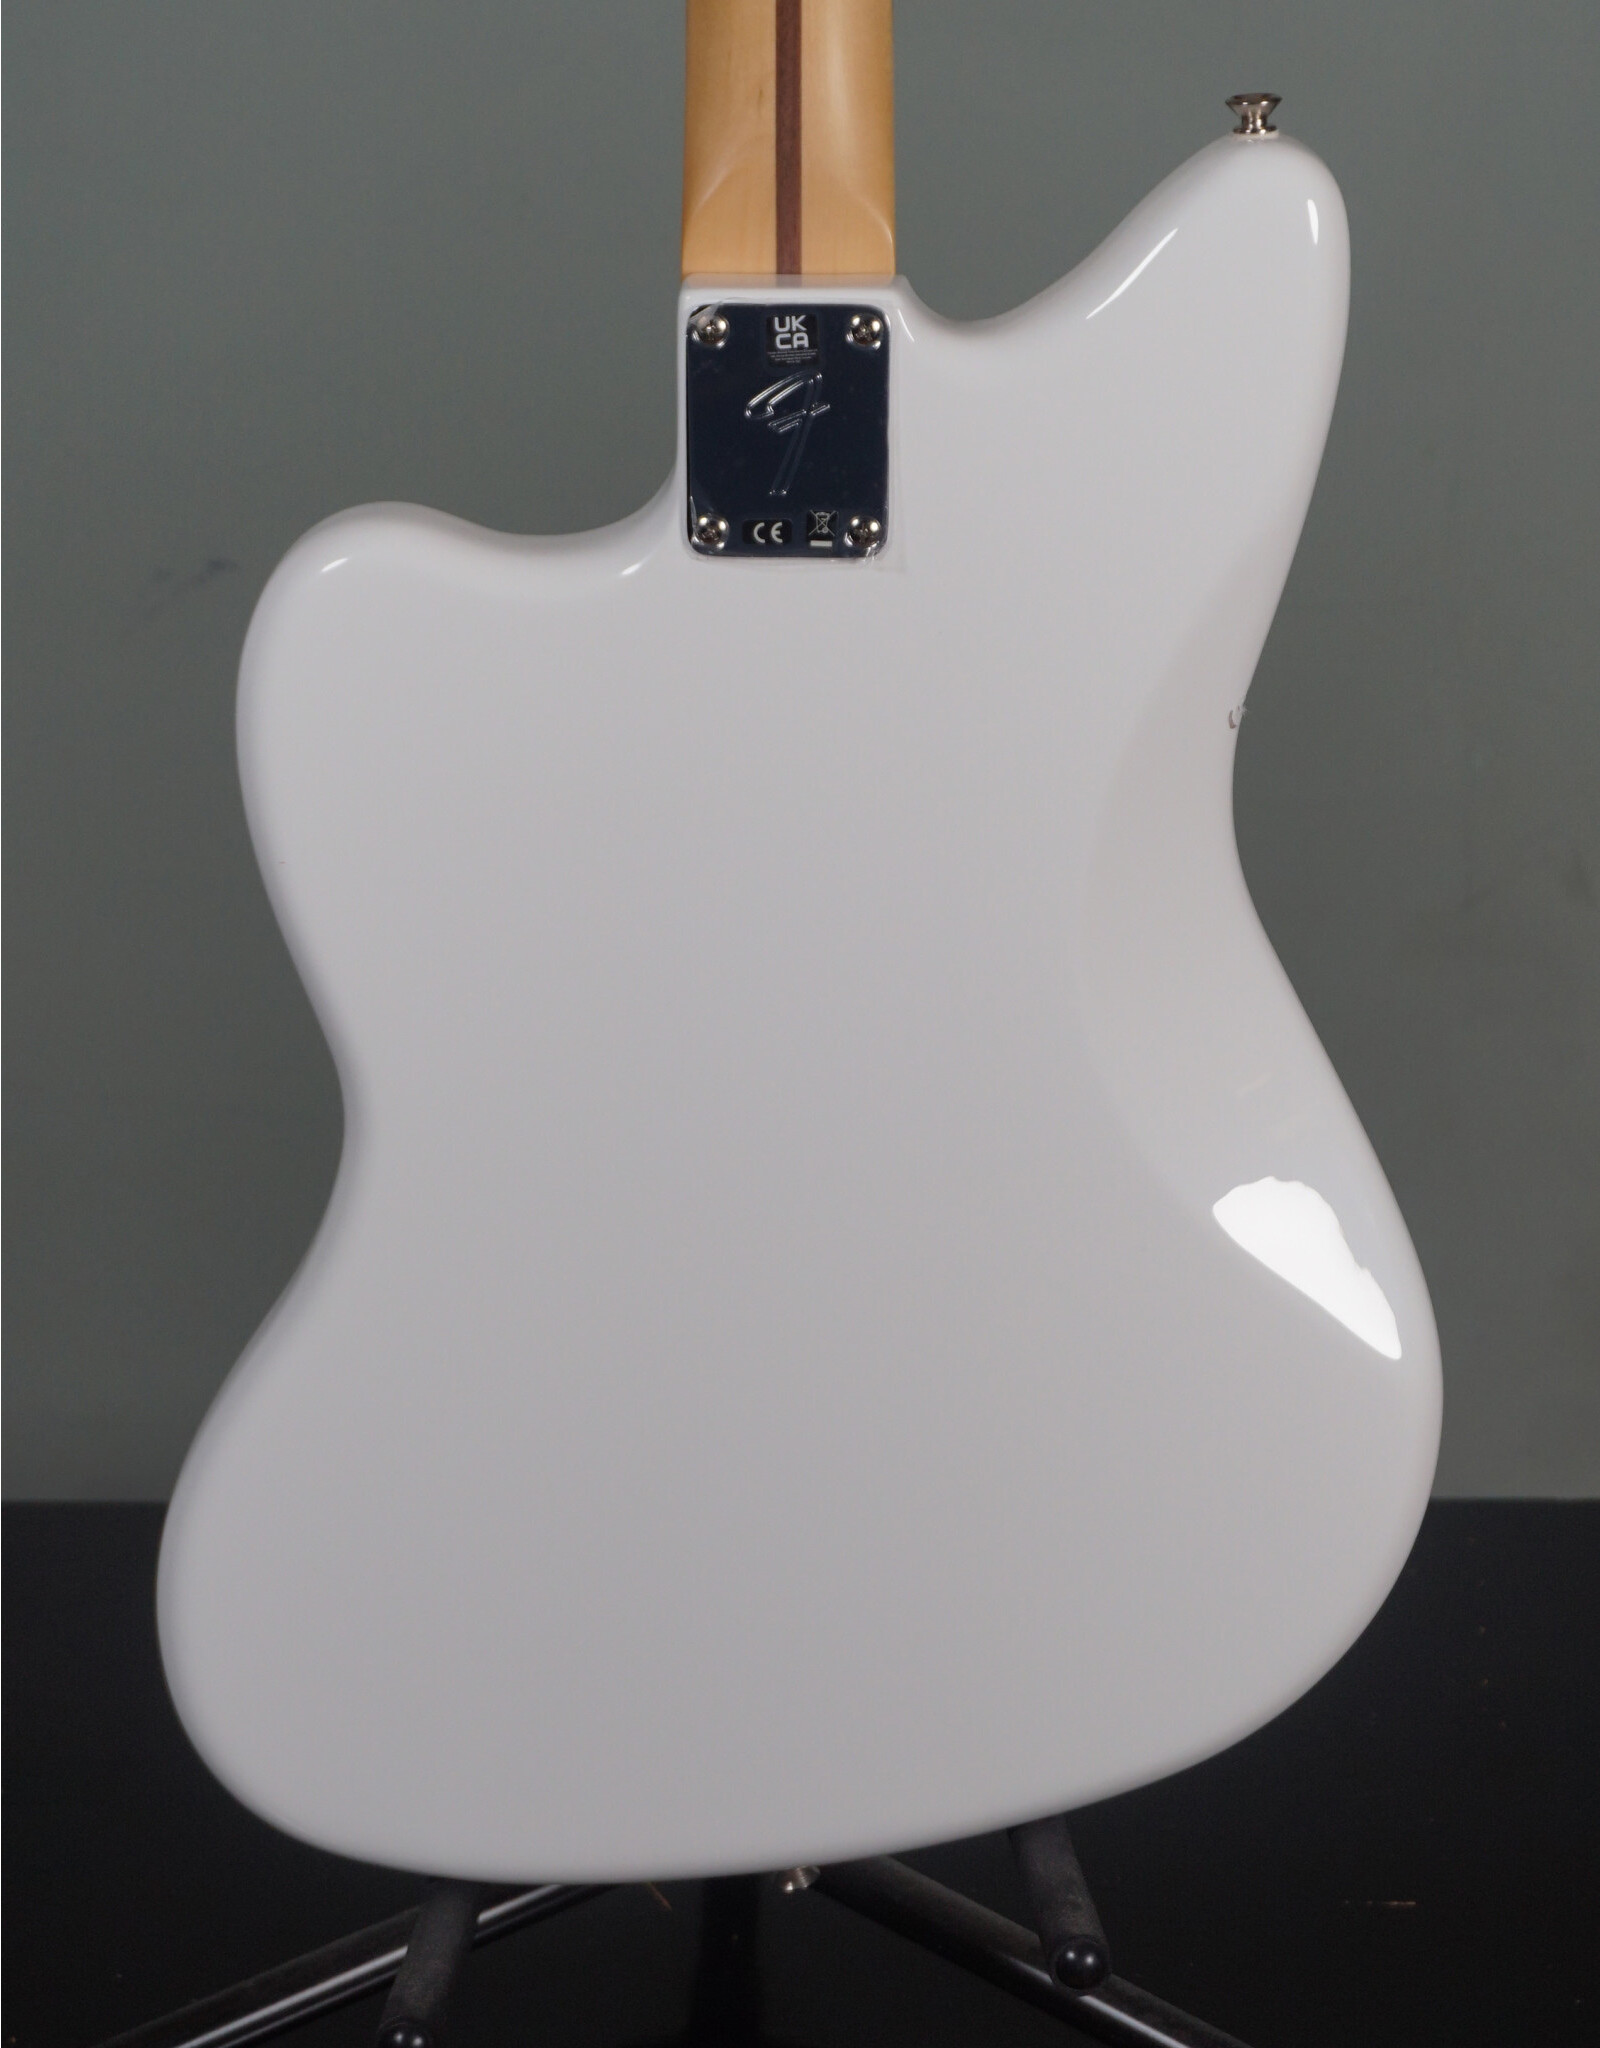 Fender Fender Player Jazzmaster, Polar White